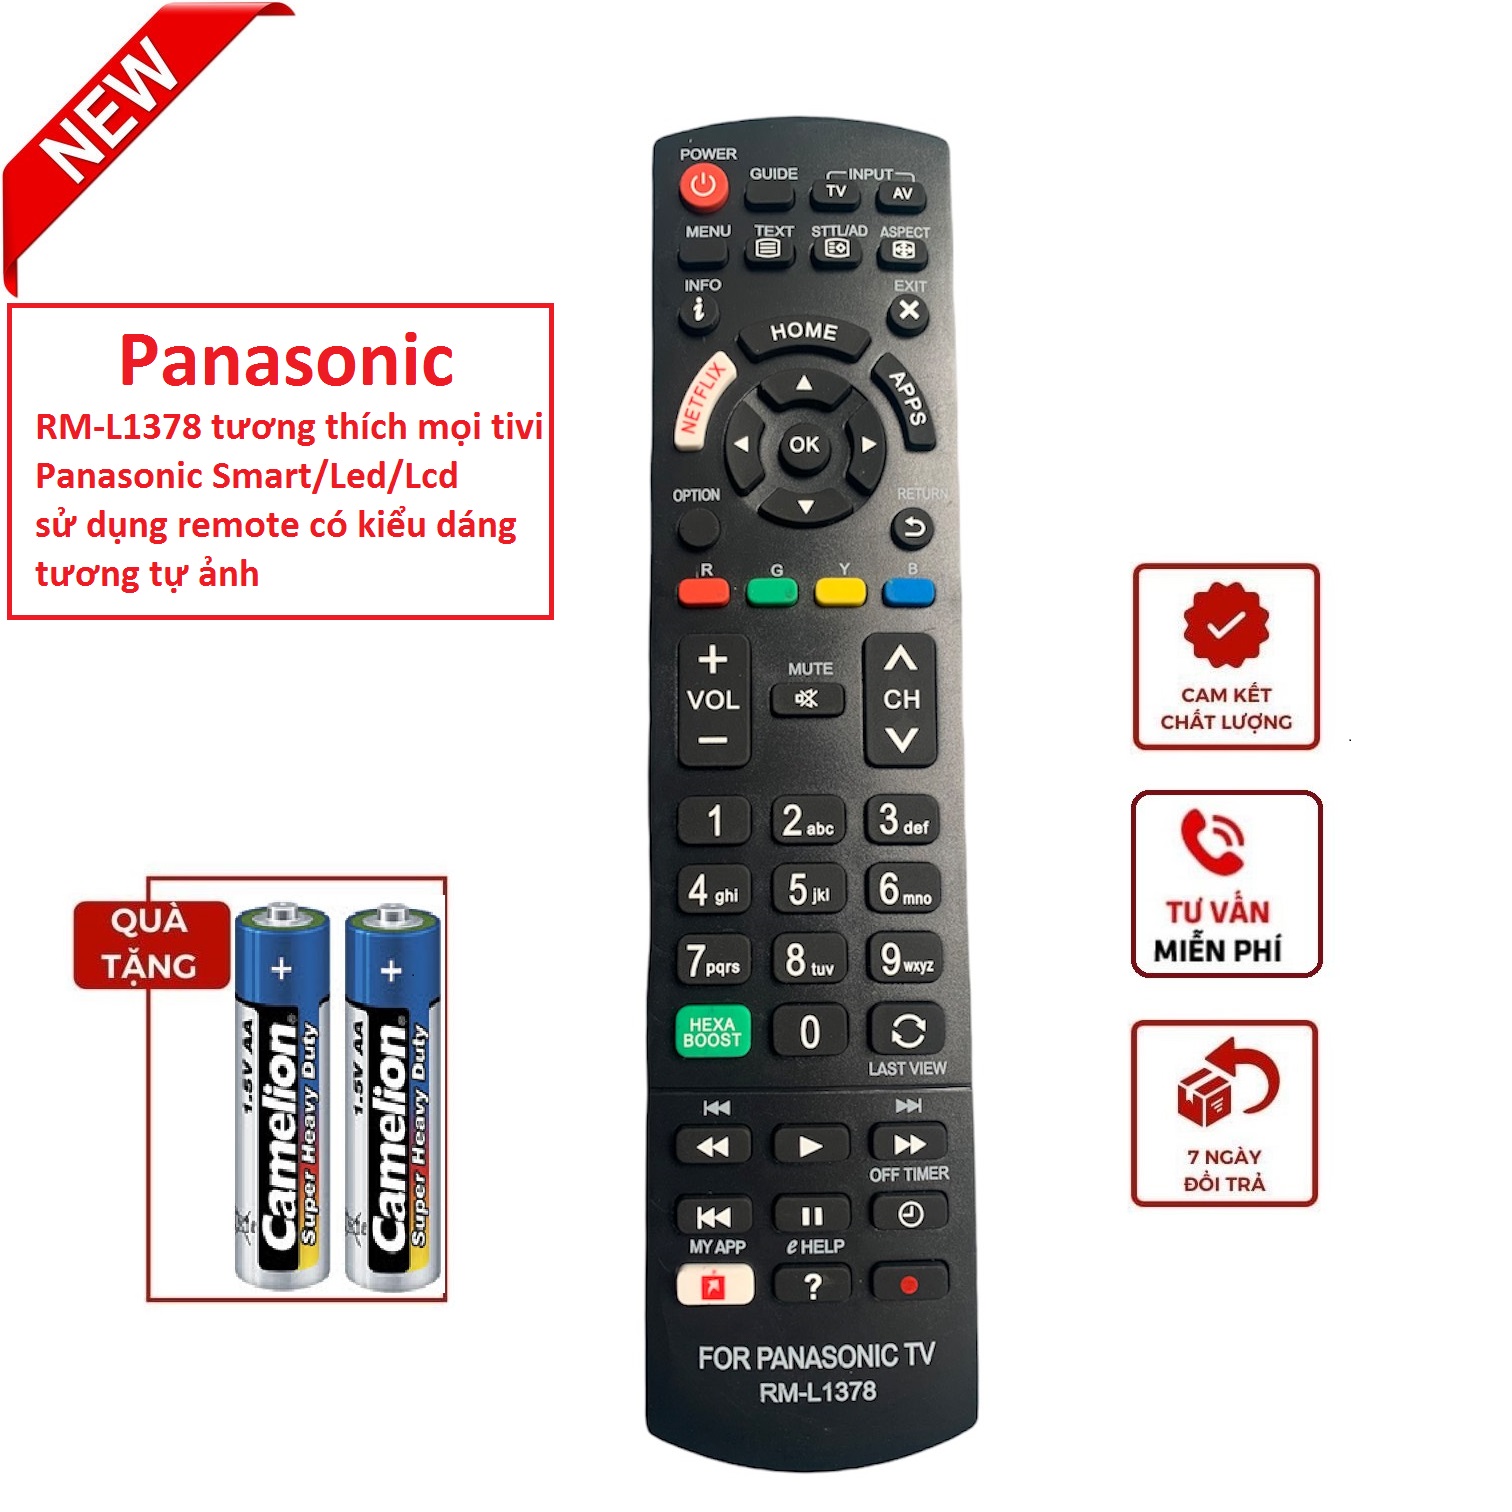 Điều khiển tivi Panasonic các dòng Smart Led Lcd TX-L32ET5B, TX-L32ET5E,